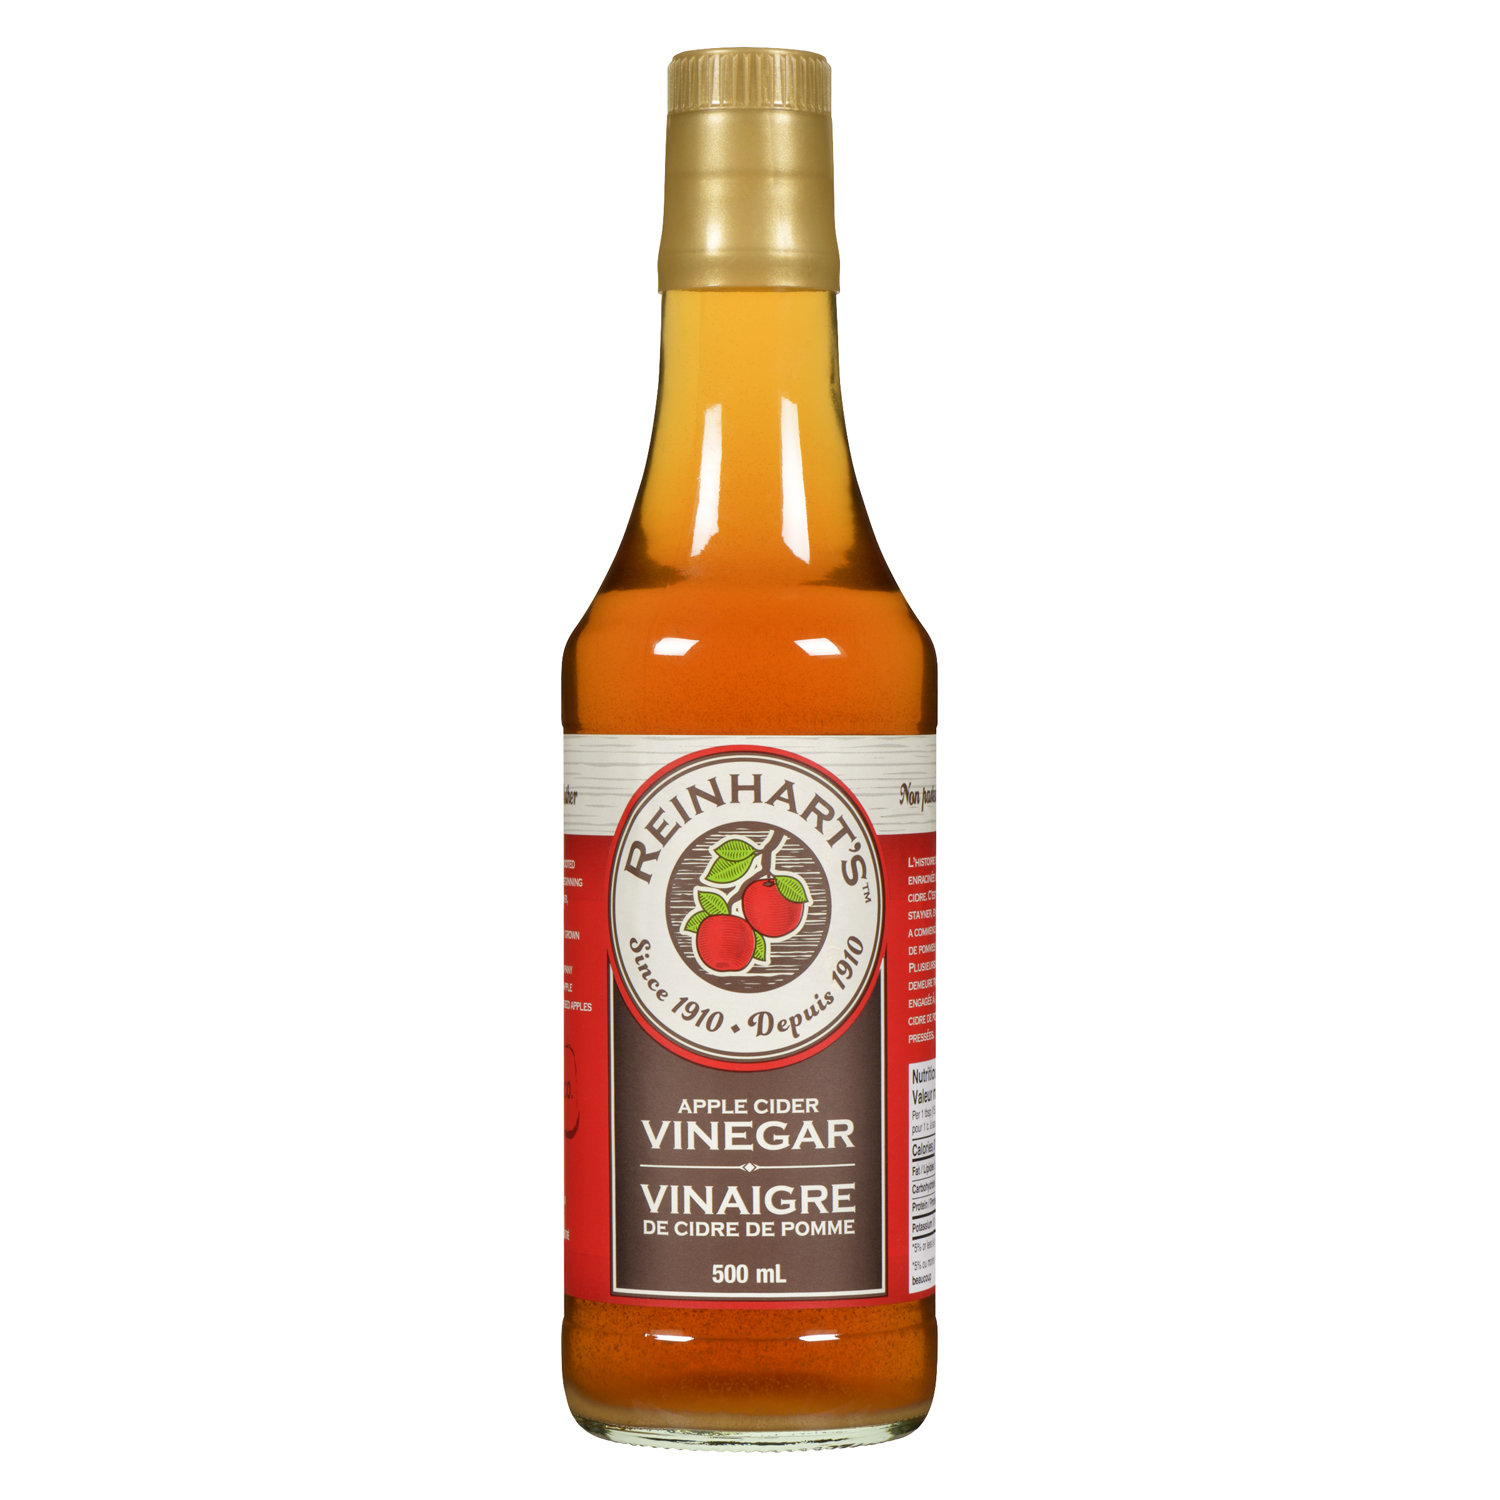 Speciality Vinegar